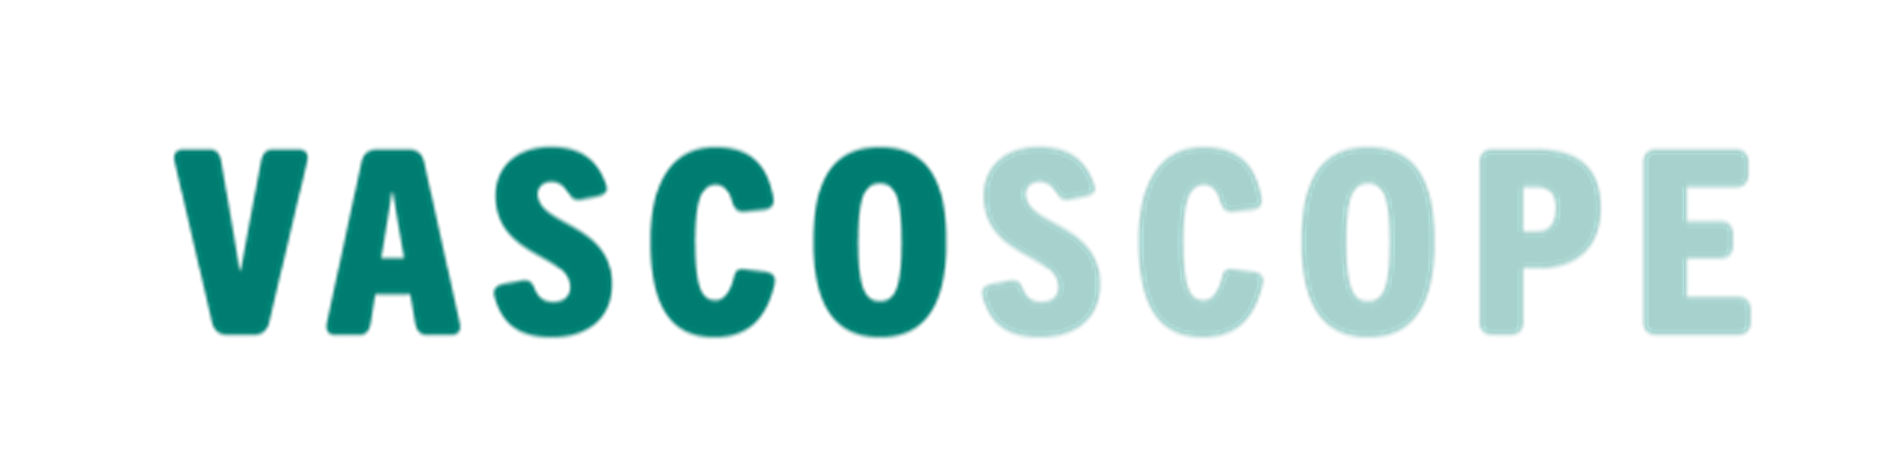 Vascoscope